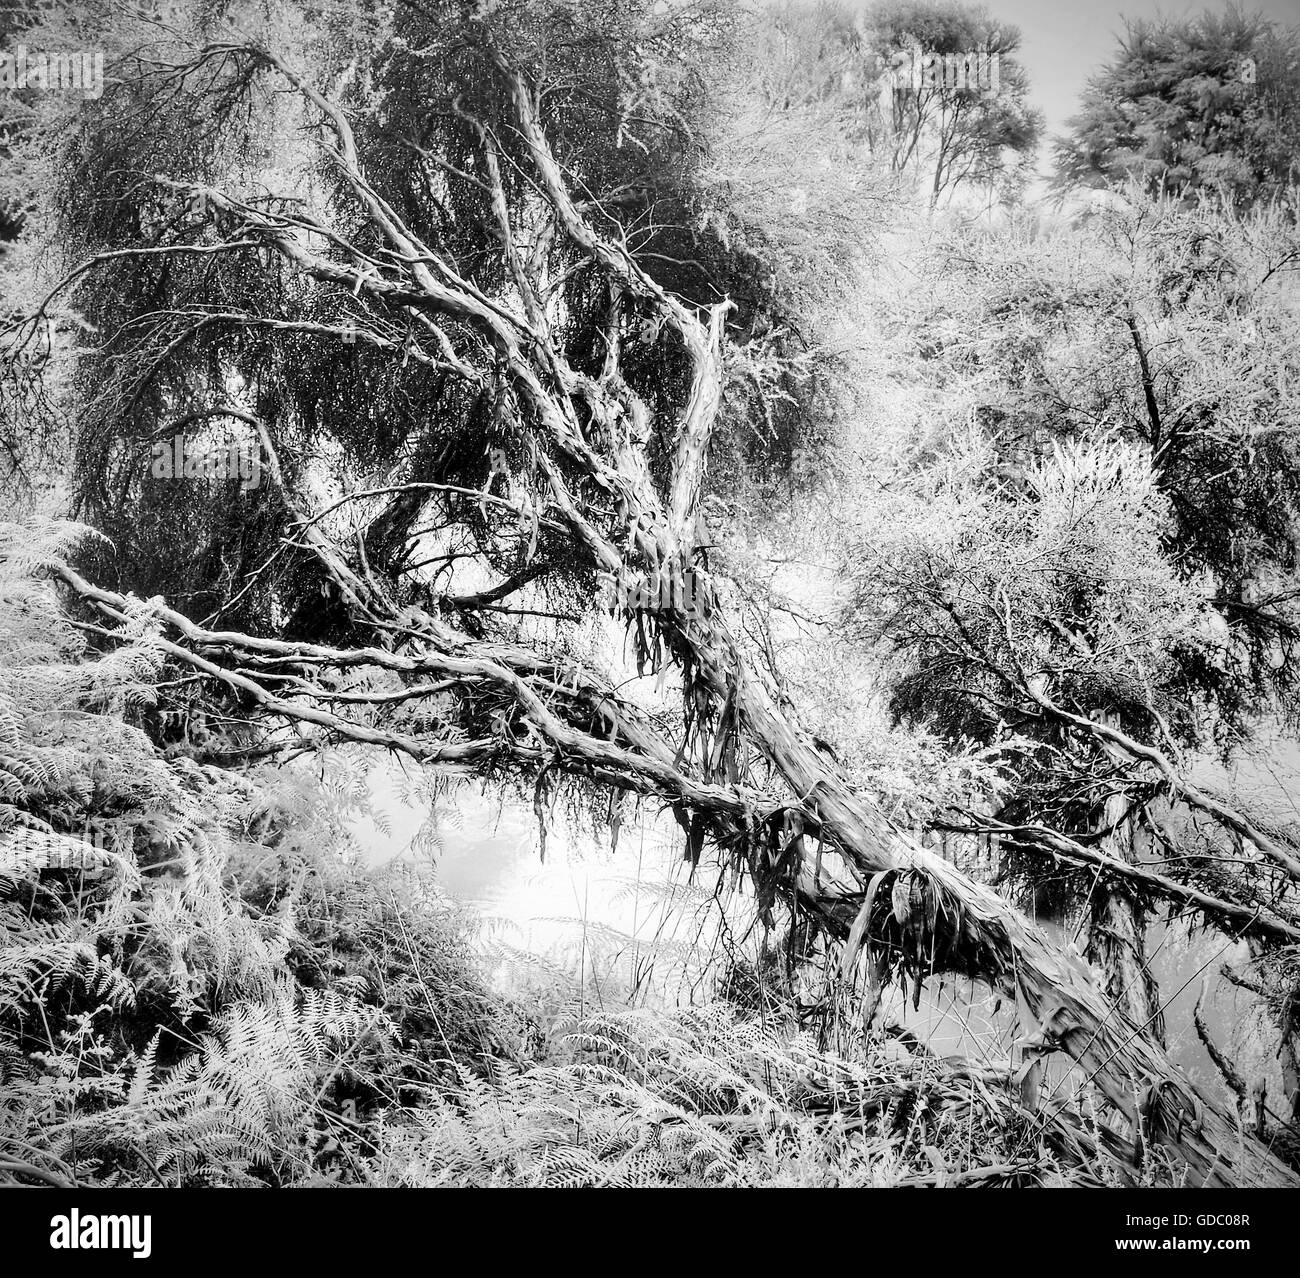 Rotorua, Neuseeland, Nordinsel, Baum, toter Baum, Dschungel, Regenwald, Natur, Urwald, schwarz und weiß, mystisch, mo Stockfoto